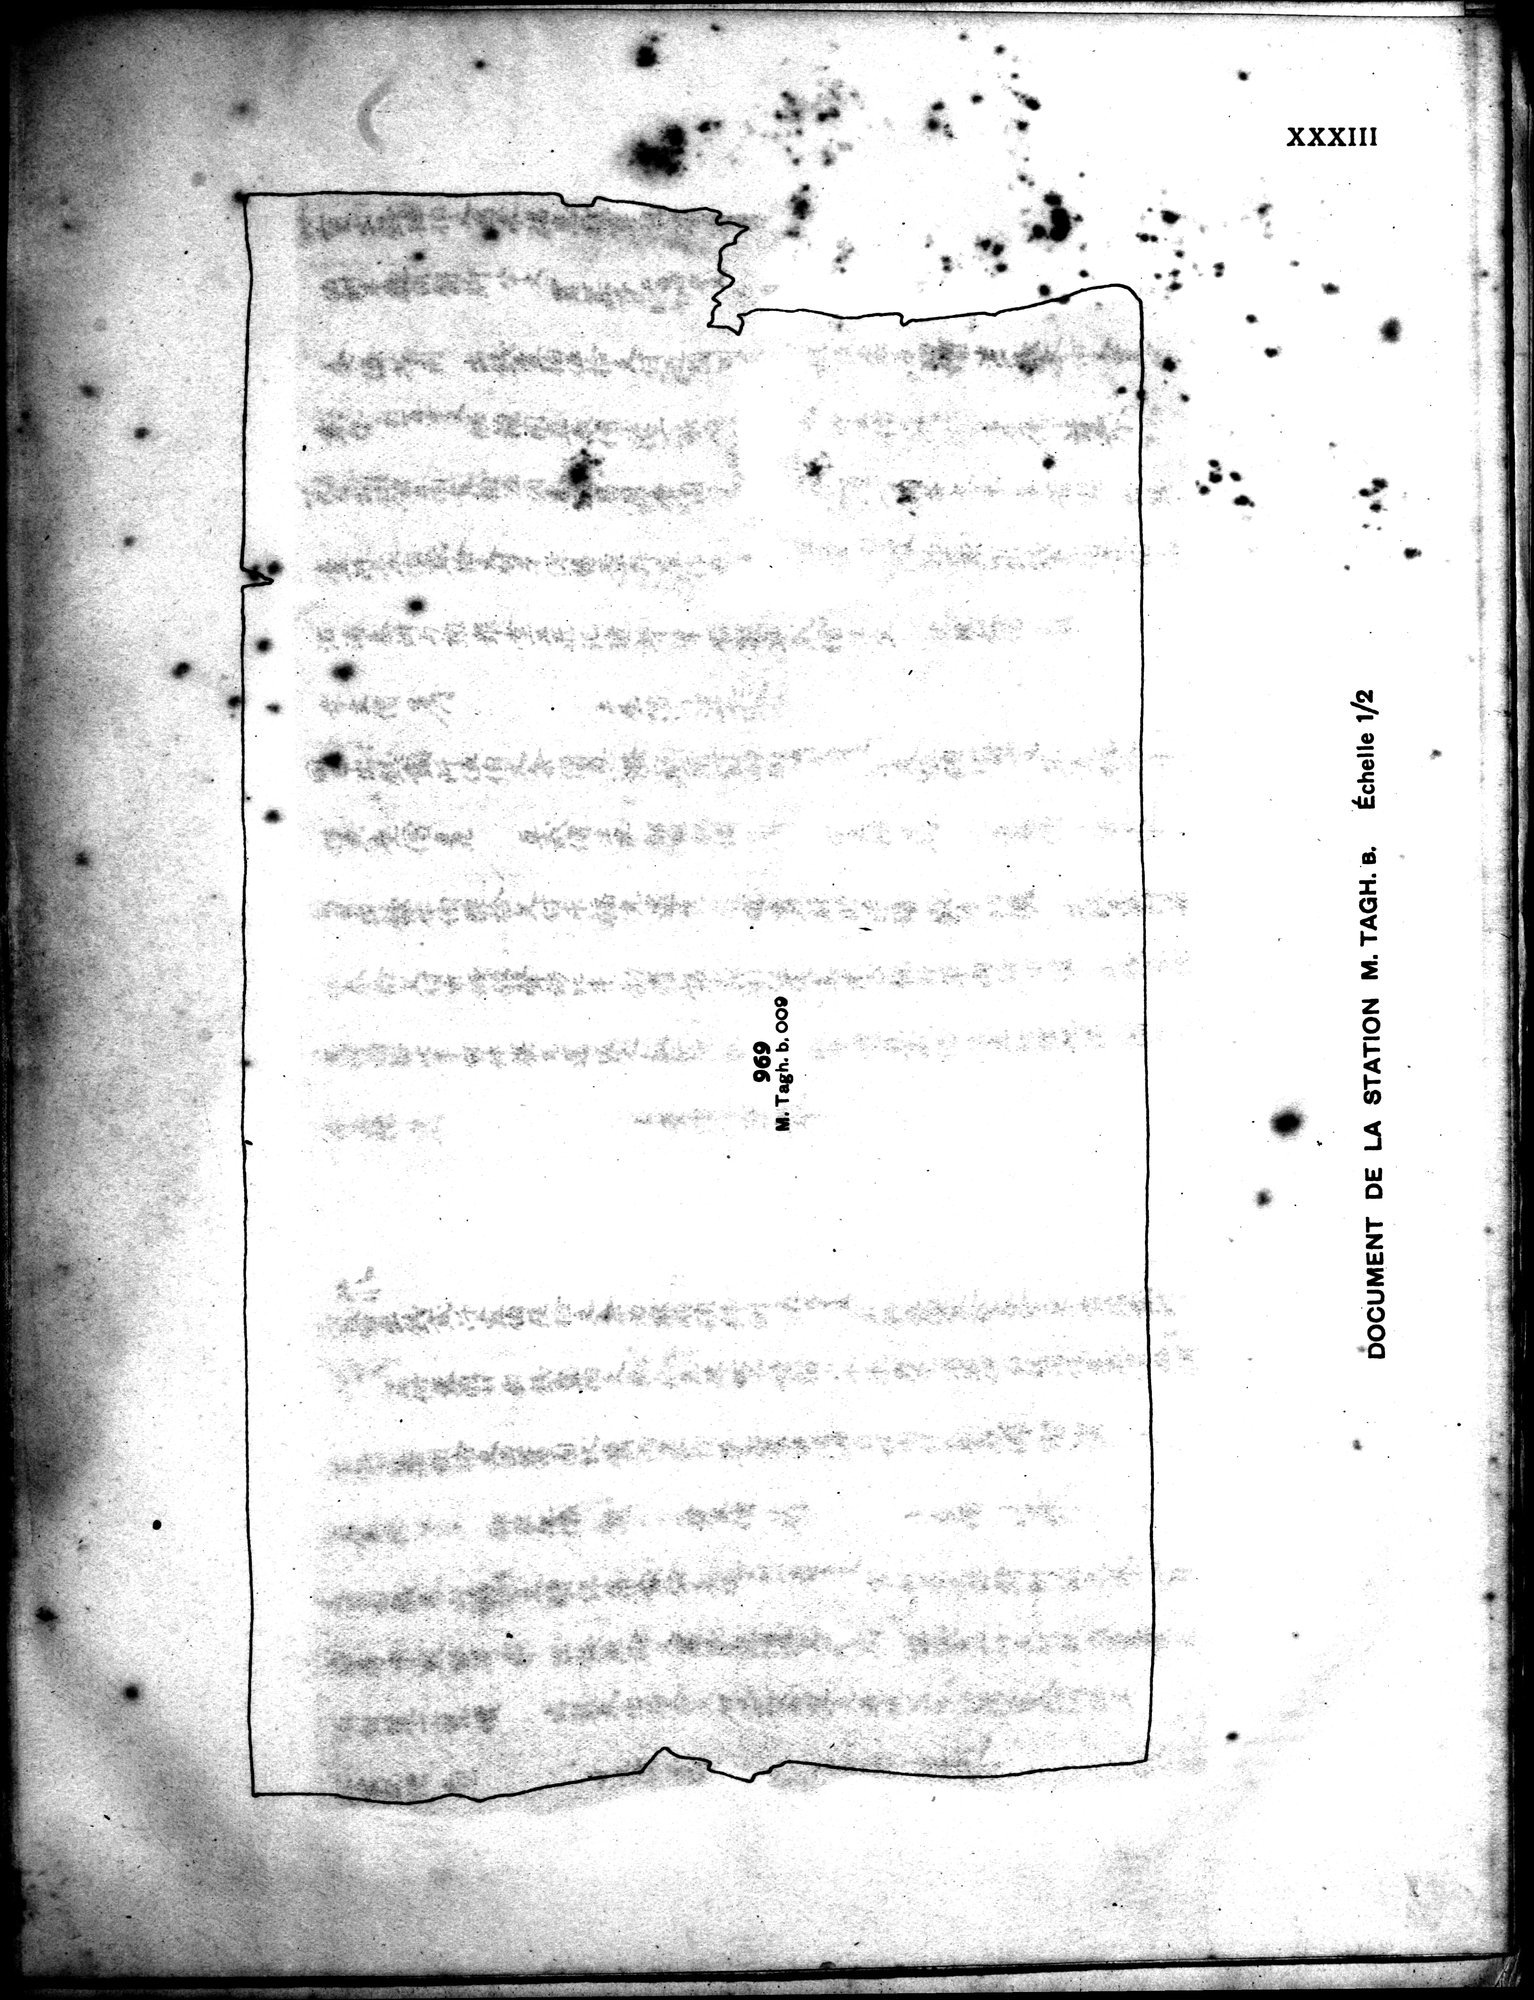 Les documents chinois découverts par Aurel Stein dans les sables du Turkestan Oriental : vol.1 / Page 397 (Grayscale High Resolution Image)